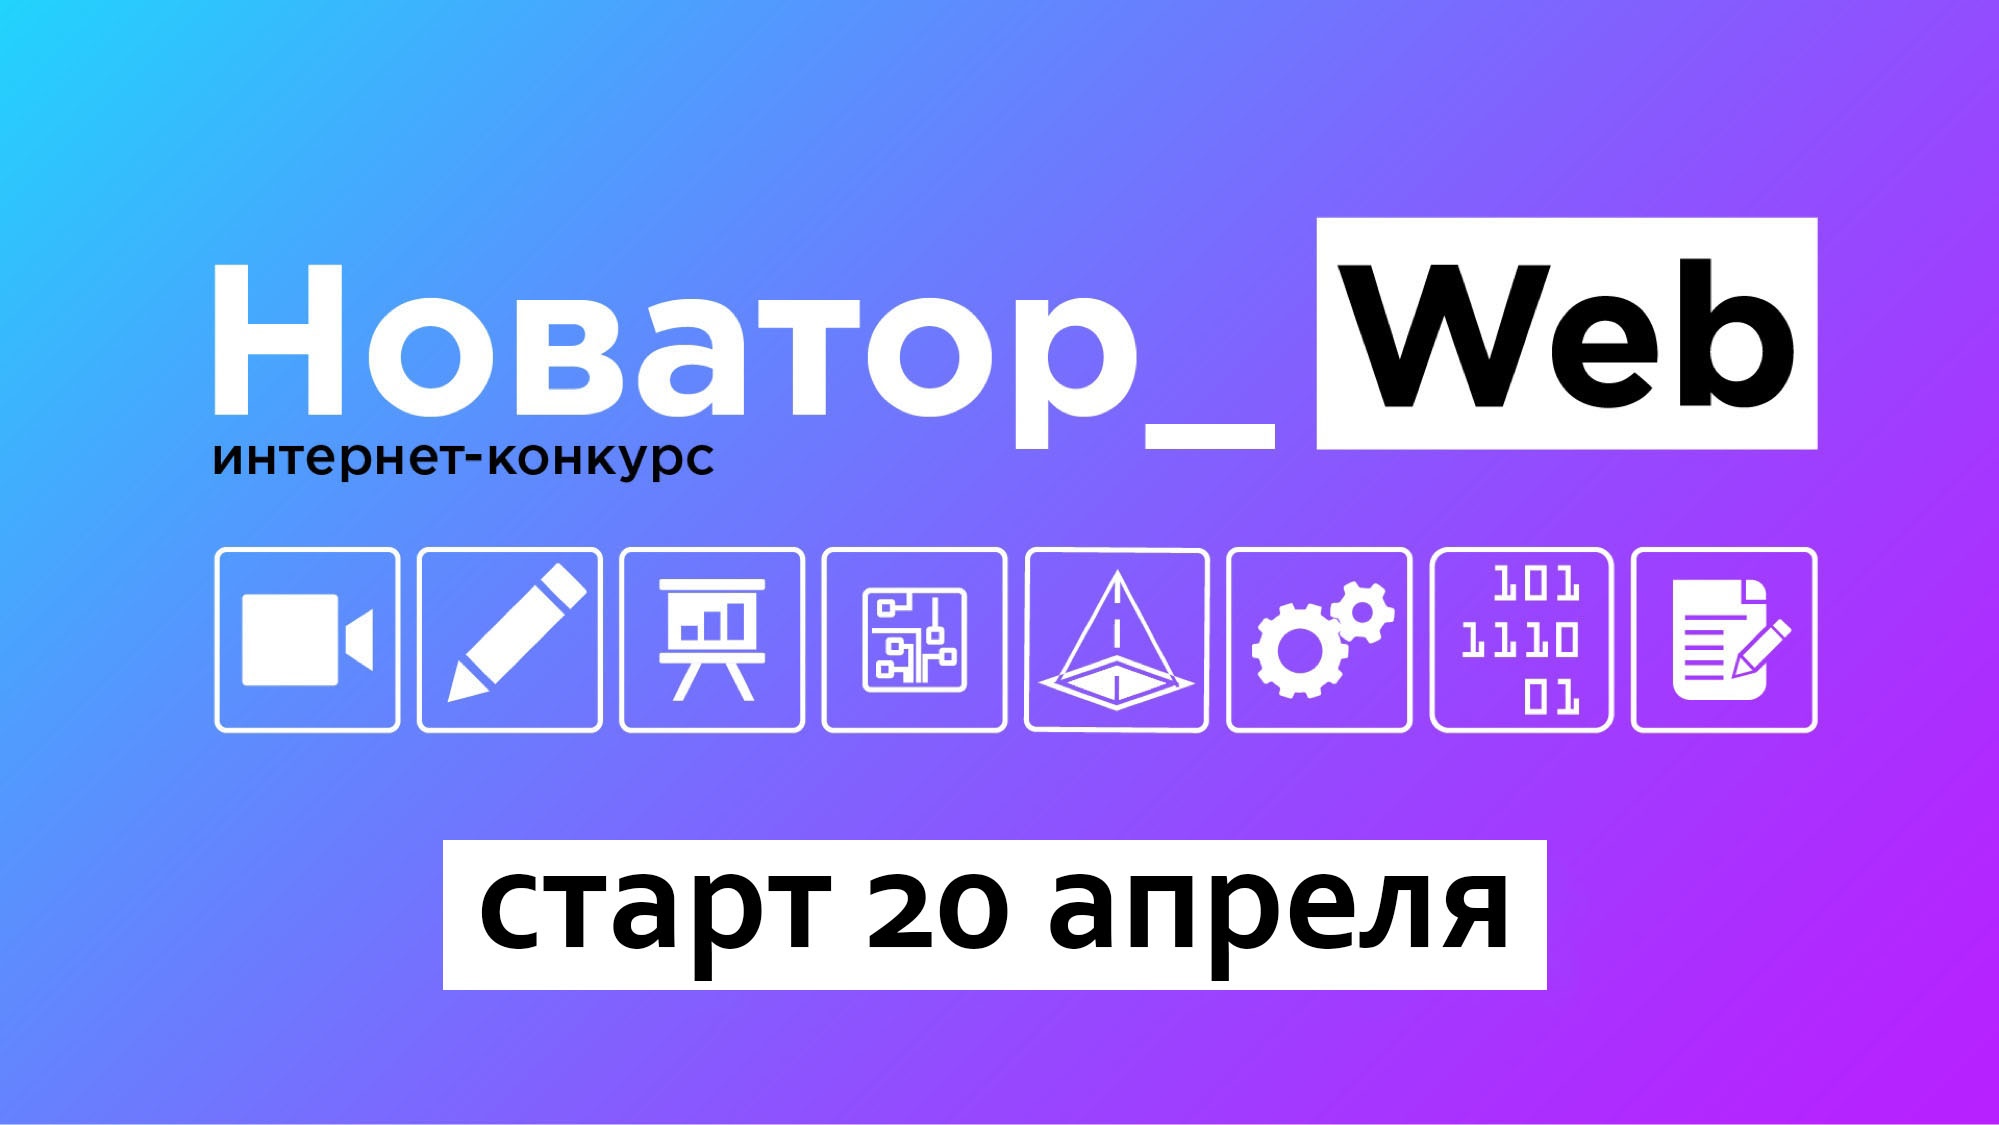 Участники конкурса «Novator_Web 2.0» могут получить подарки до старта проекта